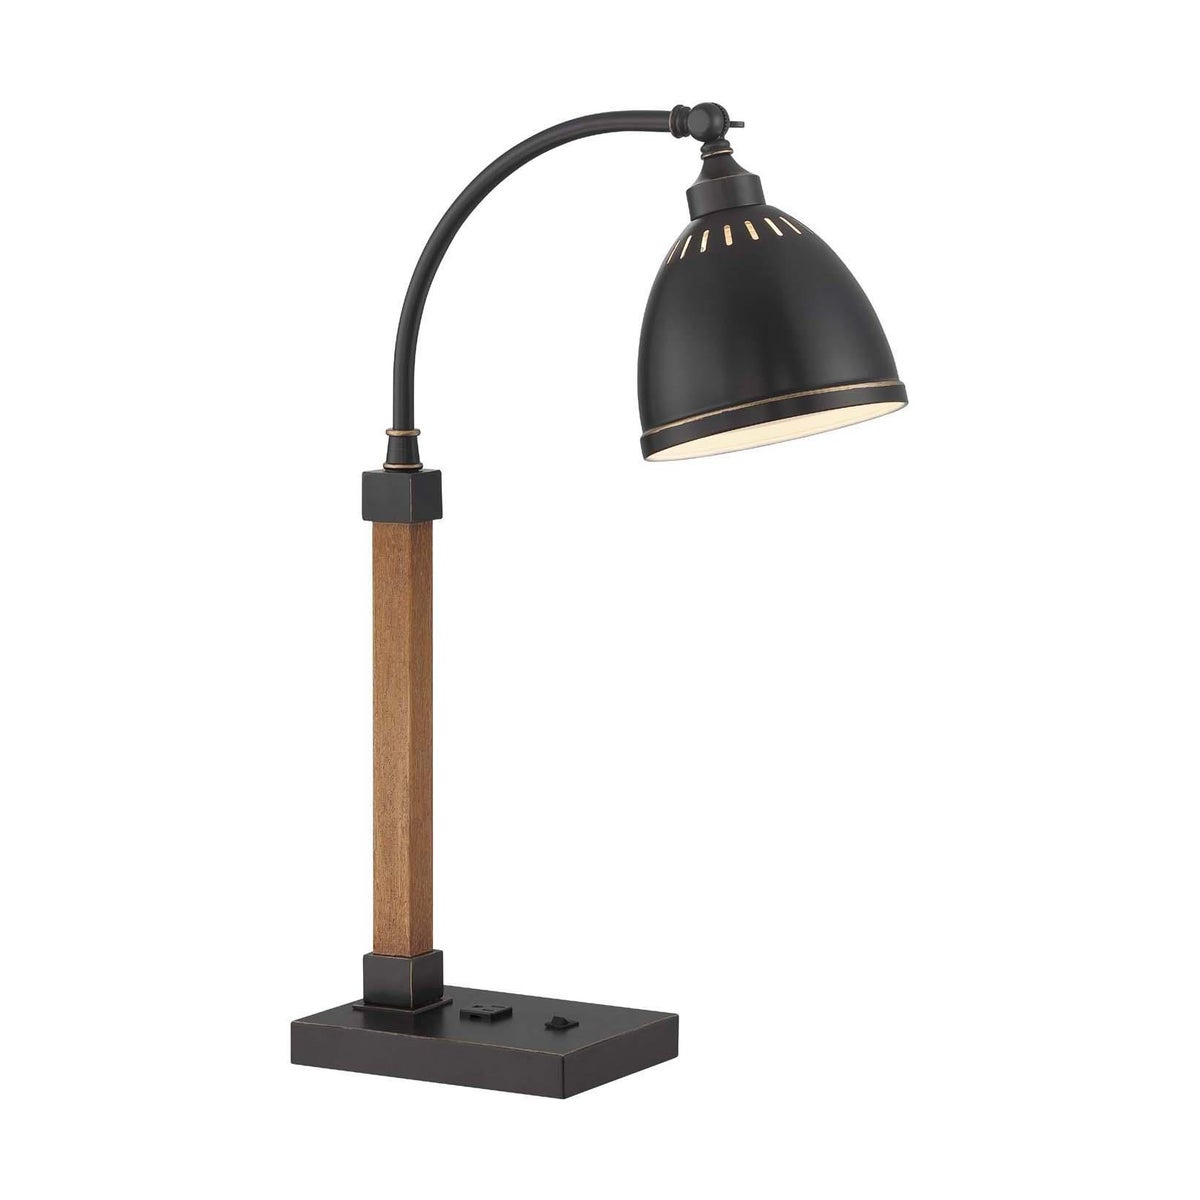 MAURIZIO Desk Lamp